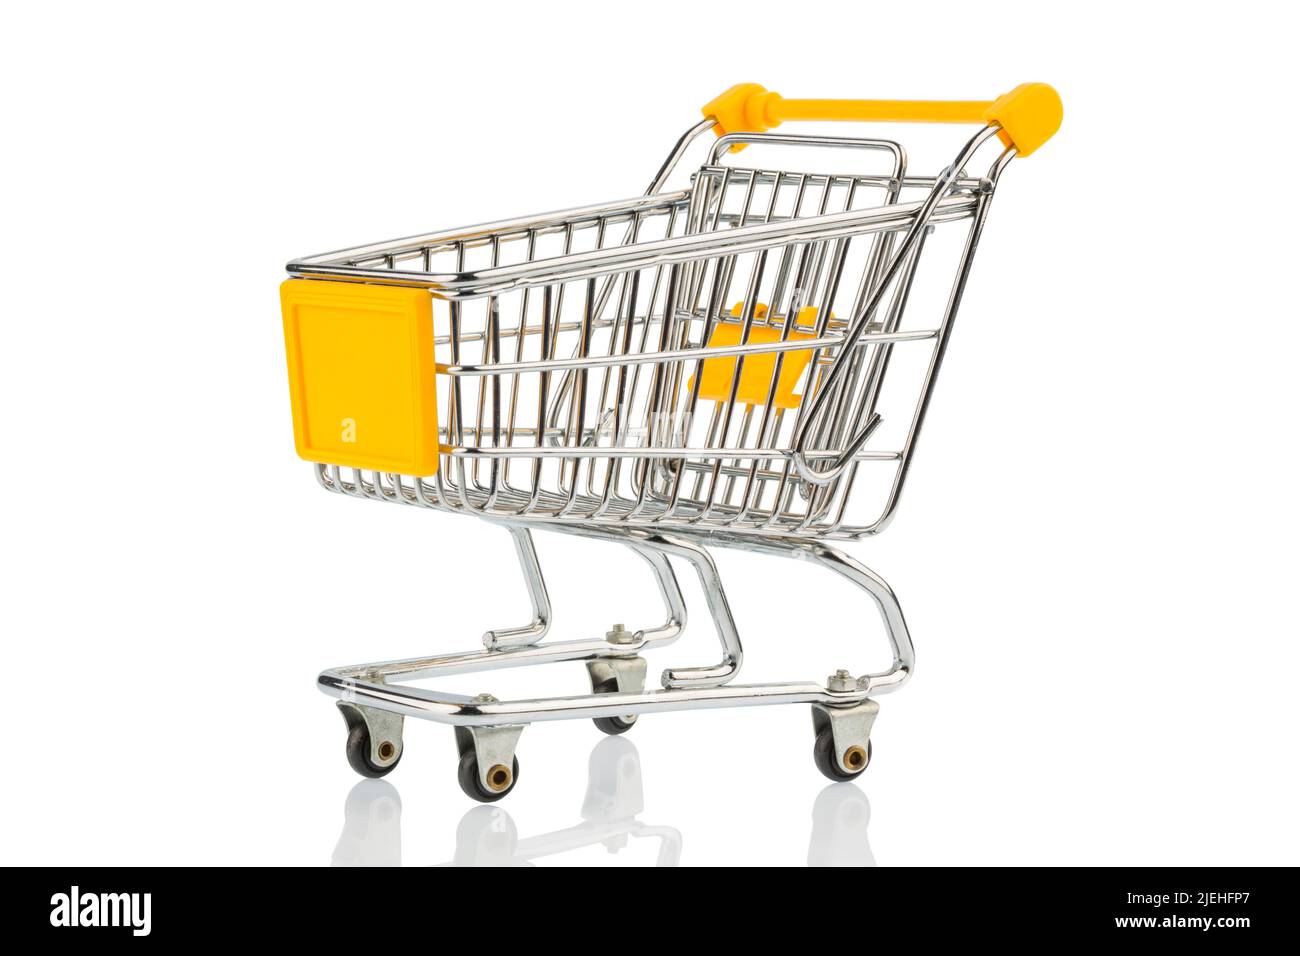 Ein Leerer Einkaufswagen auf weissem hintergrund. Symbolfoto für Einkaufen, Shoppen, Online-Shopping, Banque D'Images